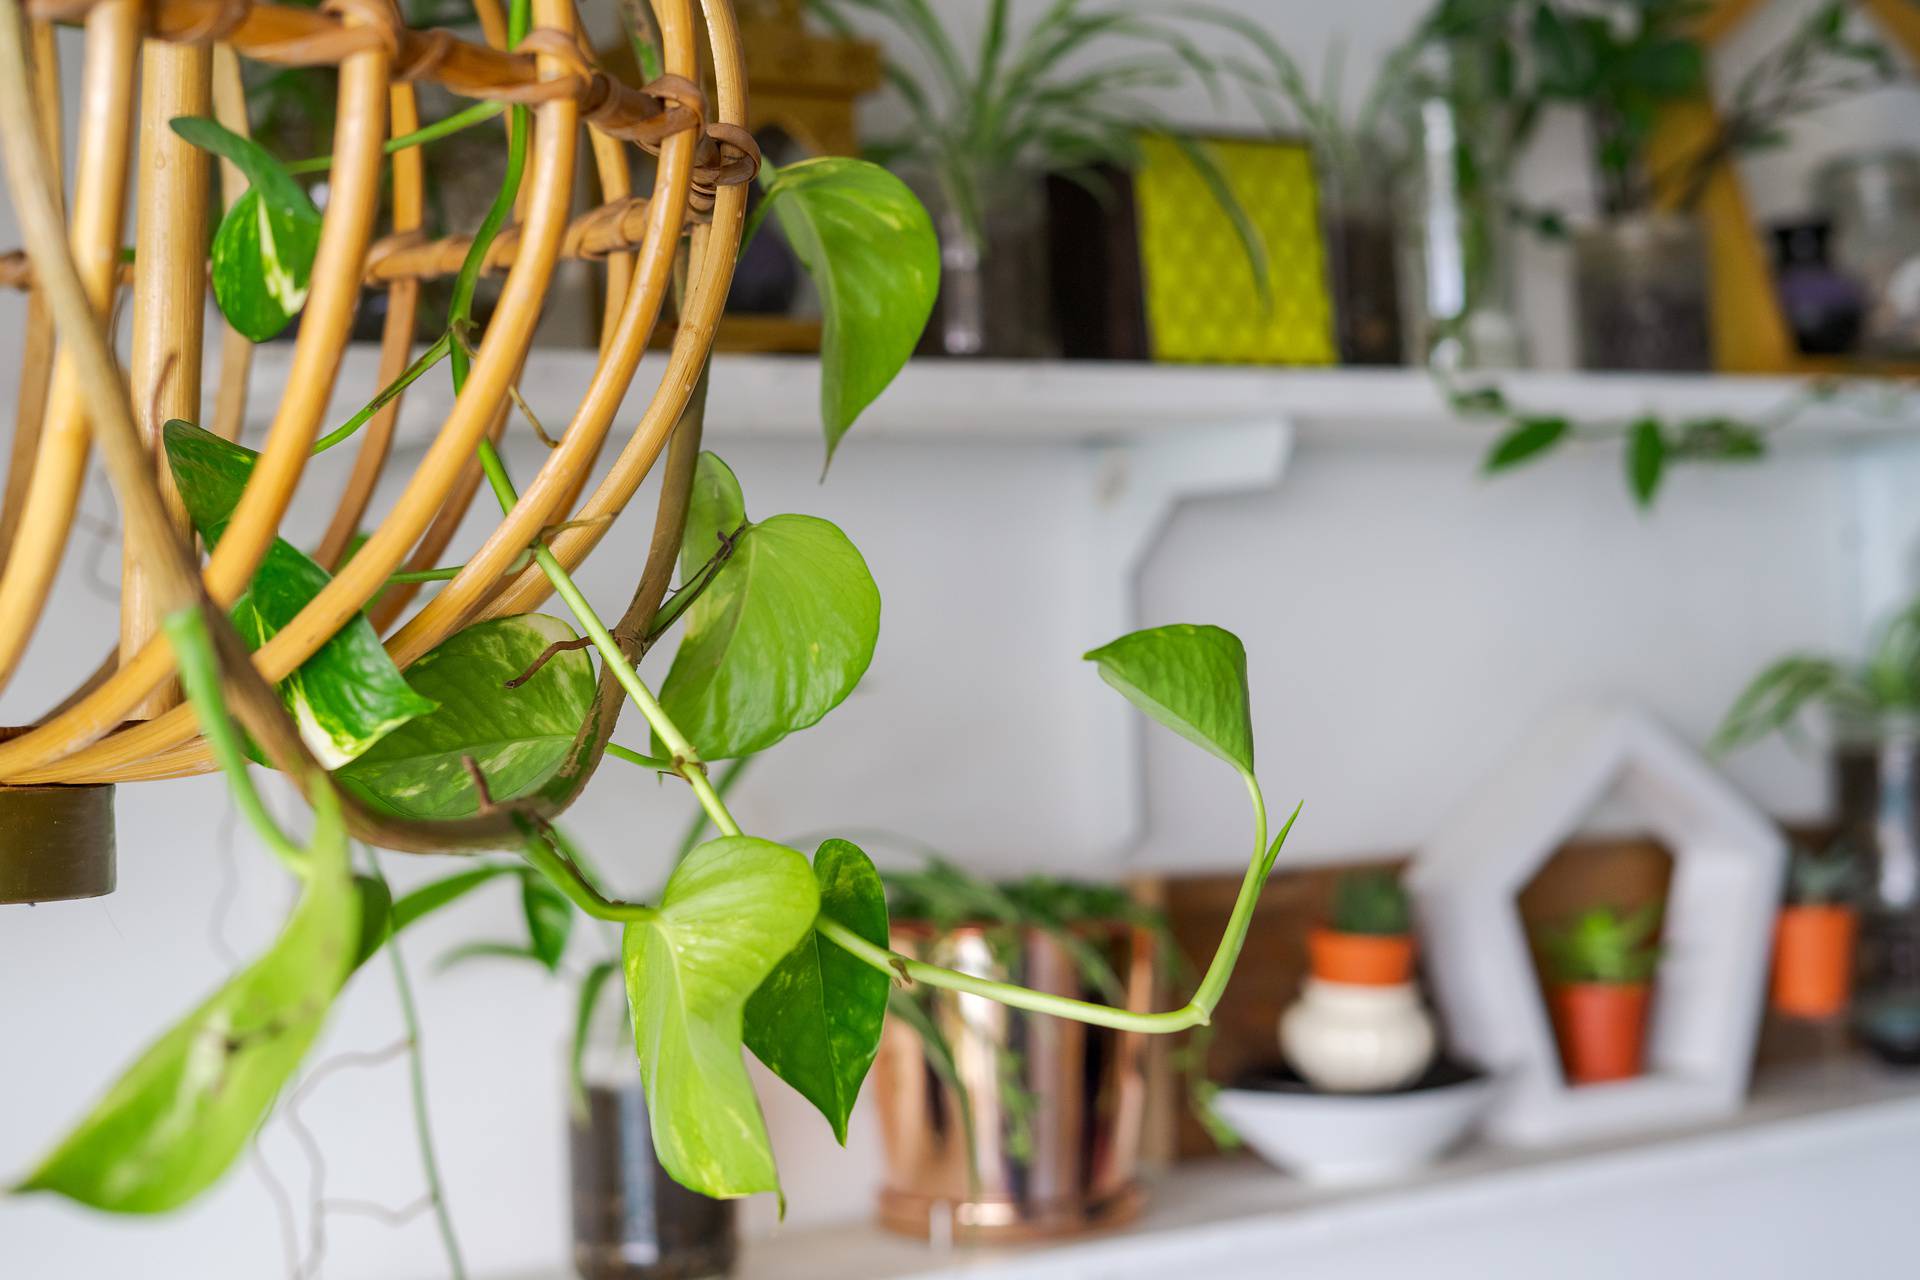 Pročistite zrak prirodno uz biljke koje unose svježinu u prostor